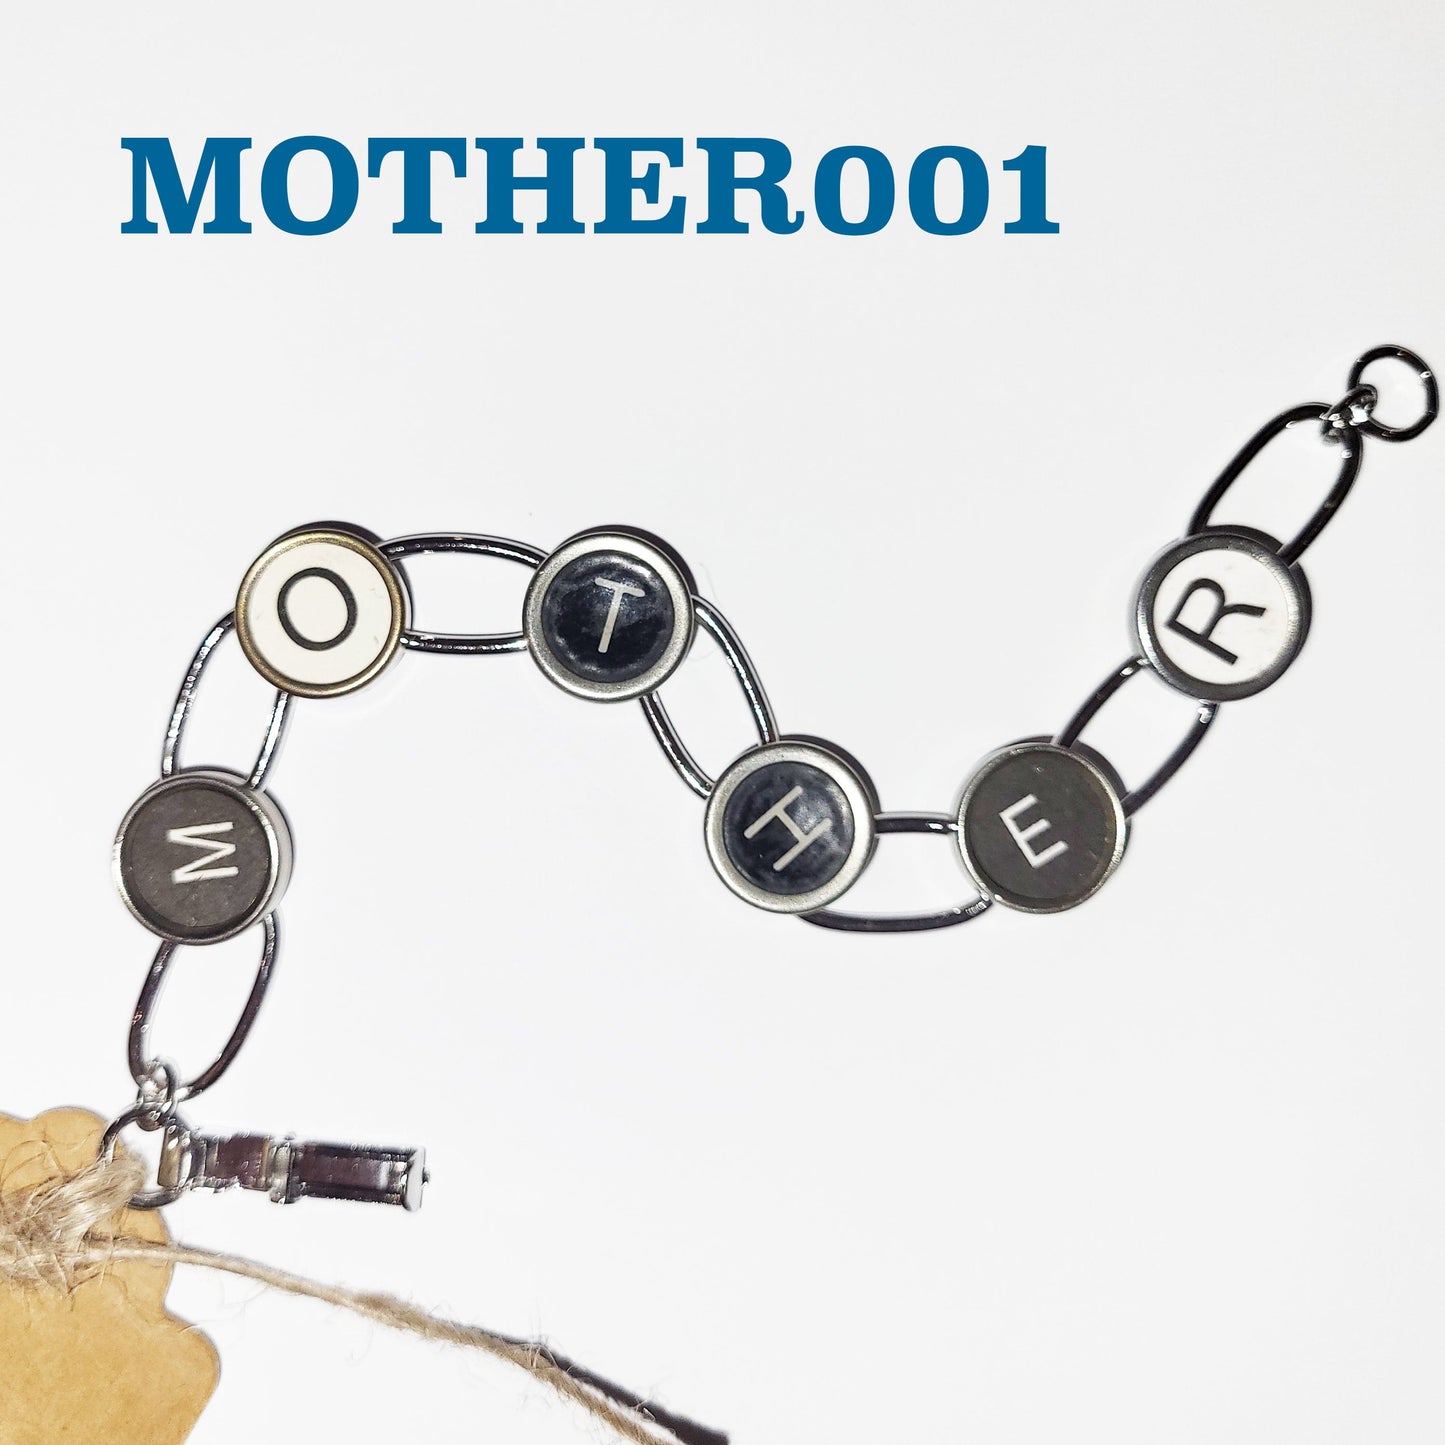 Typewriter Key Bracelet - MOTHER'S DAY